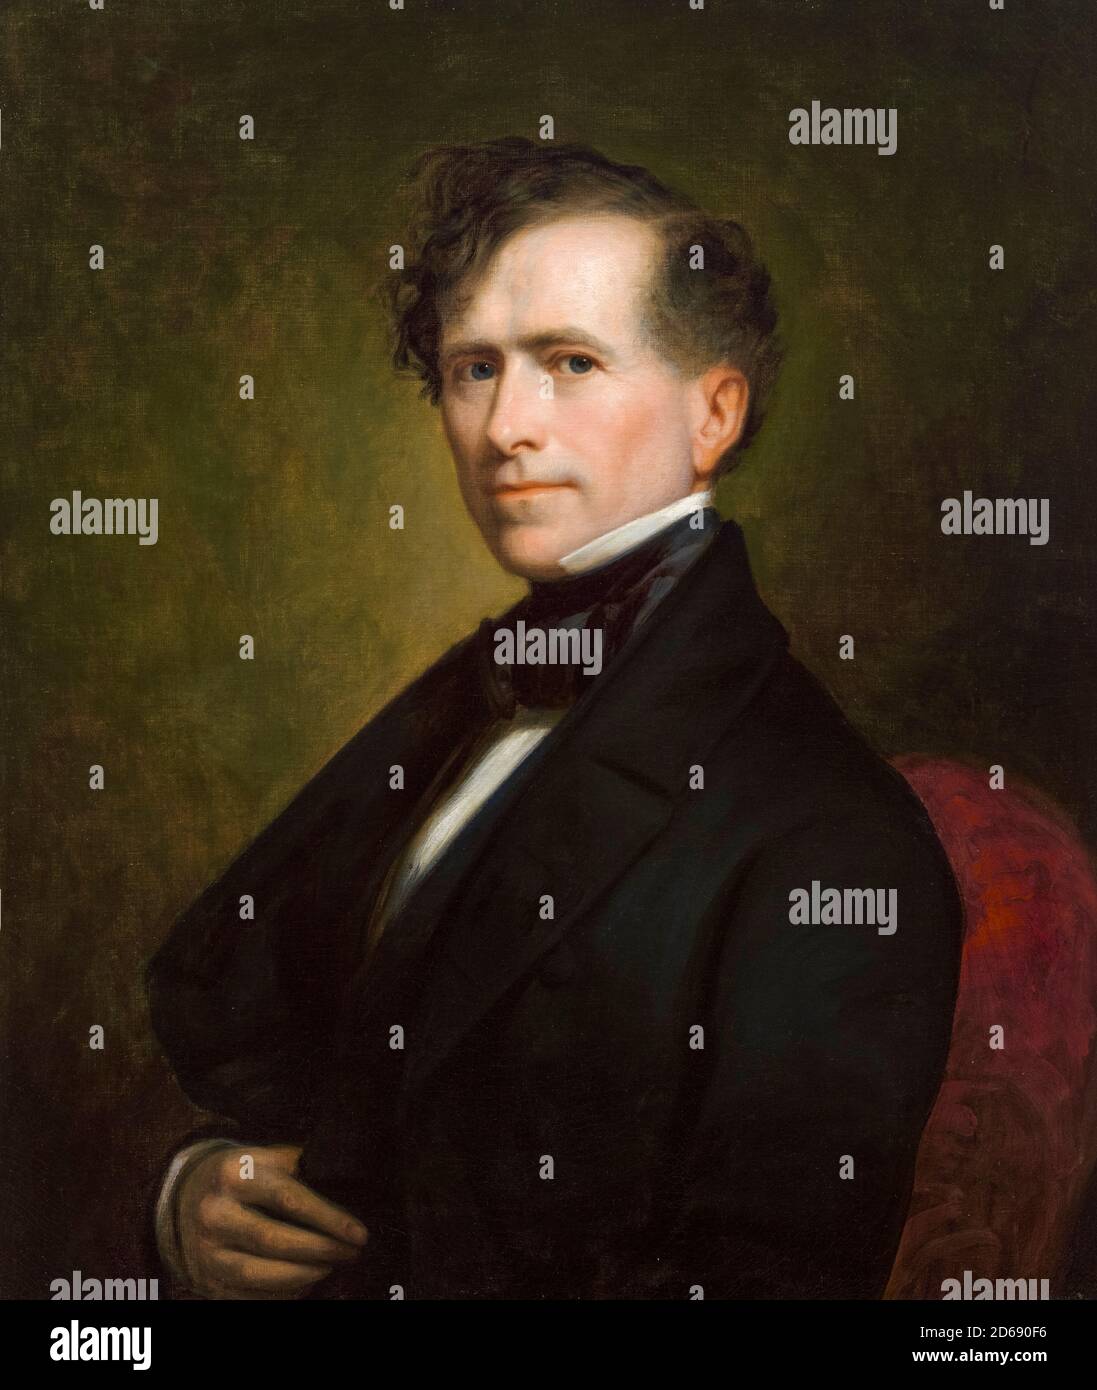 Franklin Pierce (1804-1869), amerikanischer Staatsmann, der als 14. Präsident der Vereinigten Staaten diente, Porträtmalerei von George Peter Alexander Healy, 1853 Stockfoto